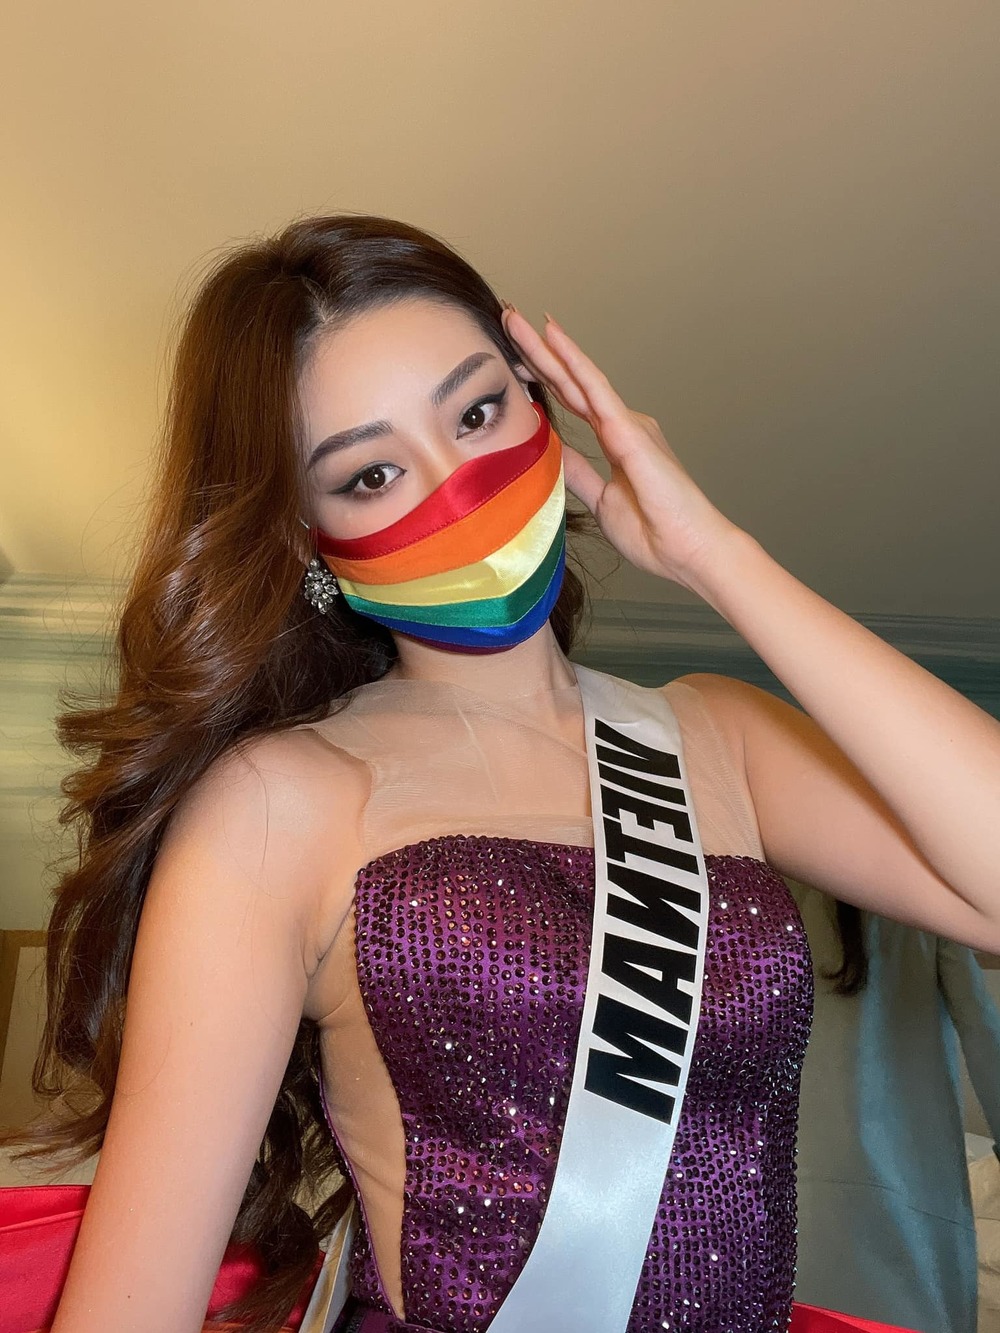 Hậu Khánh Vân LGBT: Hậu Khánh Vân, người đoạt giải Hoa hậu Việt Nam vào năm 2019 và là người đại diện của Việt Nam tham gia đấu trường Miss Universe, đã xác nhận mình là người đồng tính và tạo ra sự chú ý lớn trong cộng đồng LGBT tại Việt Nam. Hãy xem hình ảnh liên quan đến vấn đề này để biết thêm về câu chuyện của cô ấy.